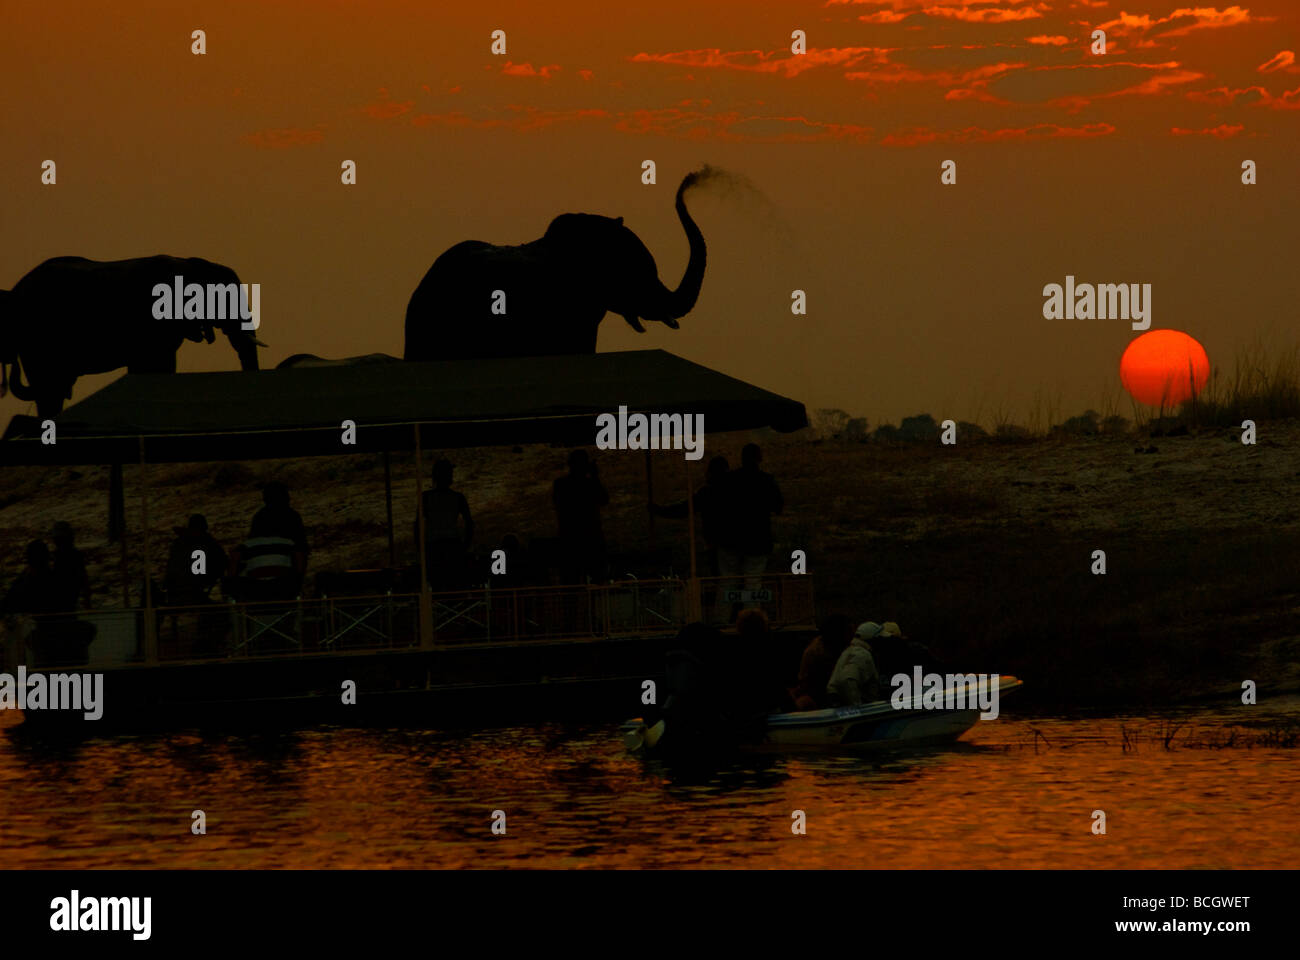 Des croisières au coucher du soleil sont un must pour les touristes à la recherche de photos de la faune de la rivière Chobe, Chobe National Park, Botswana Banque D'Images